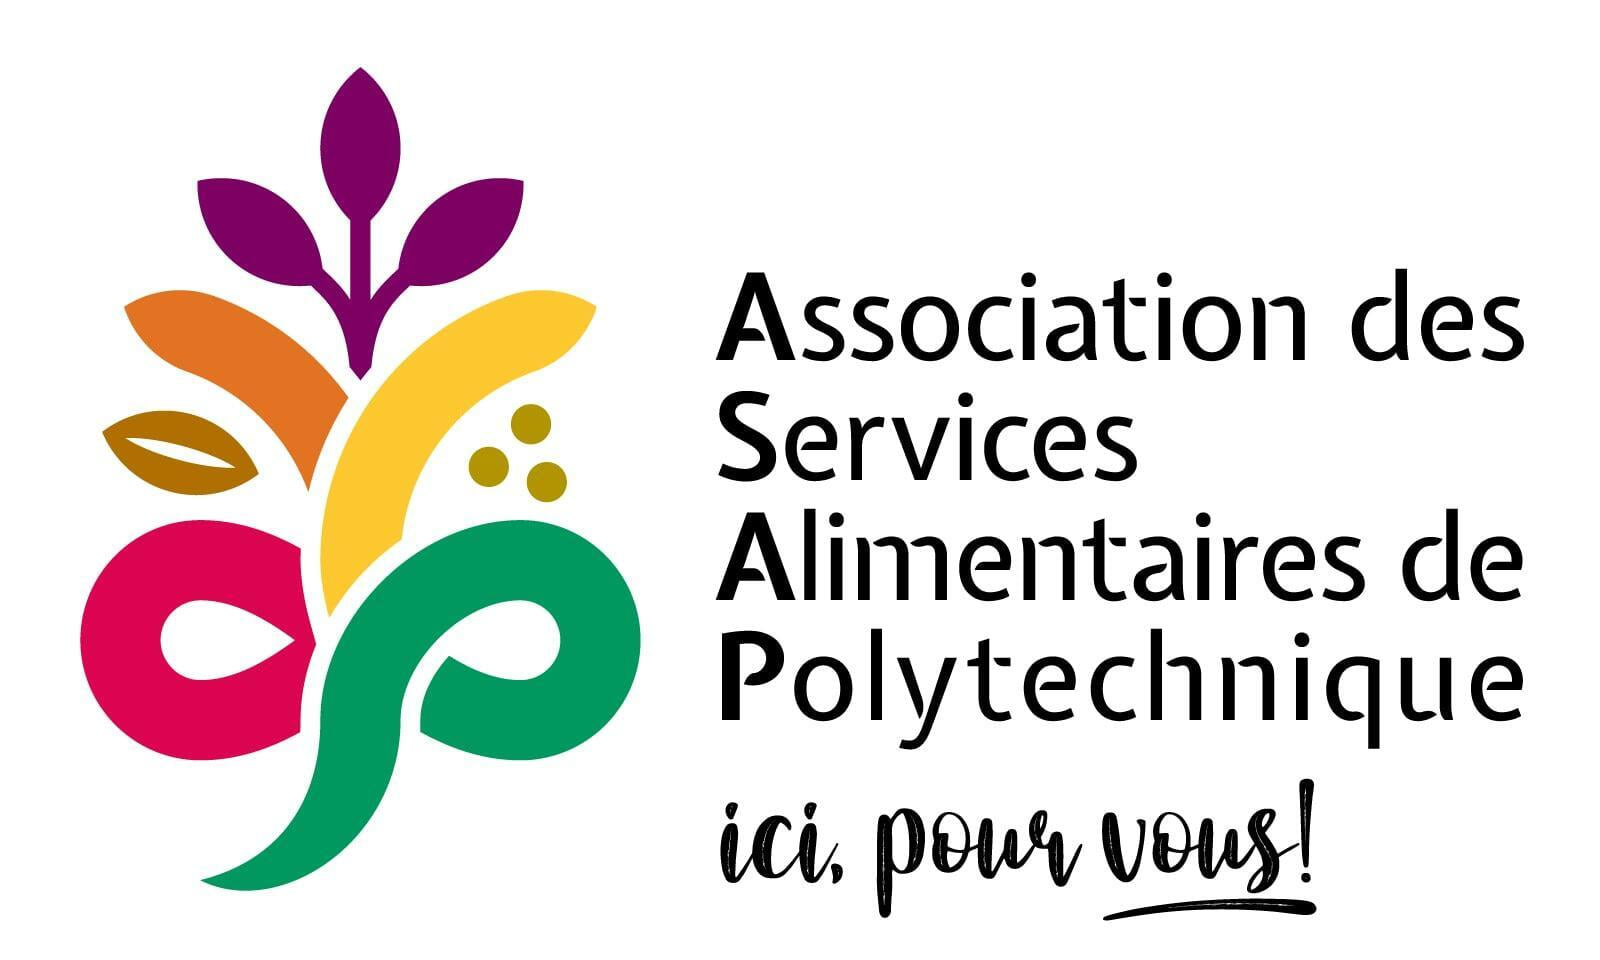 Association des services alimentaires de Polytechnique